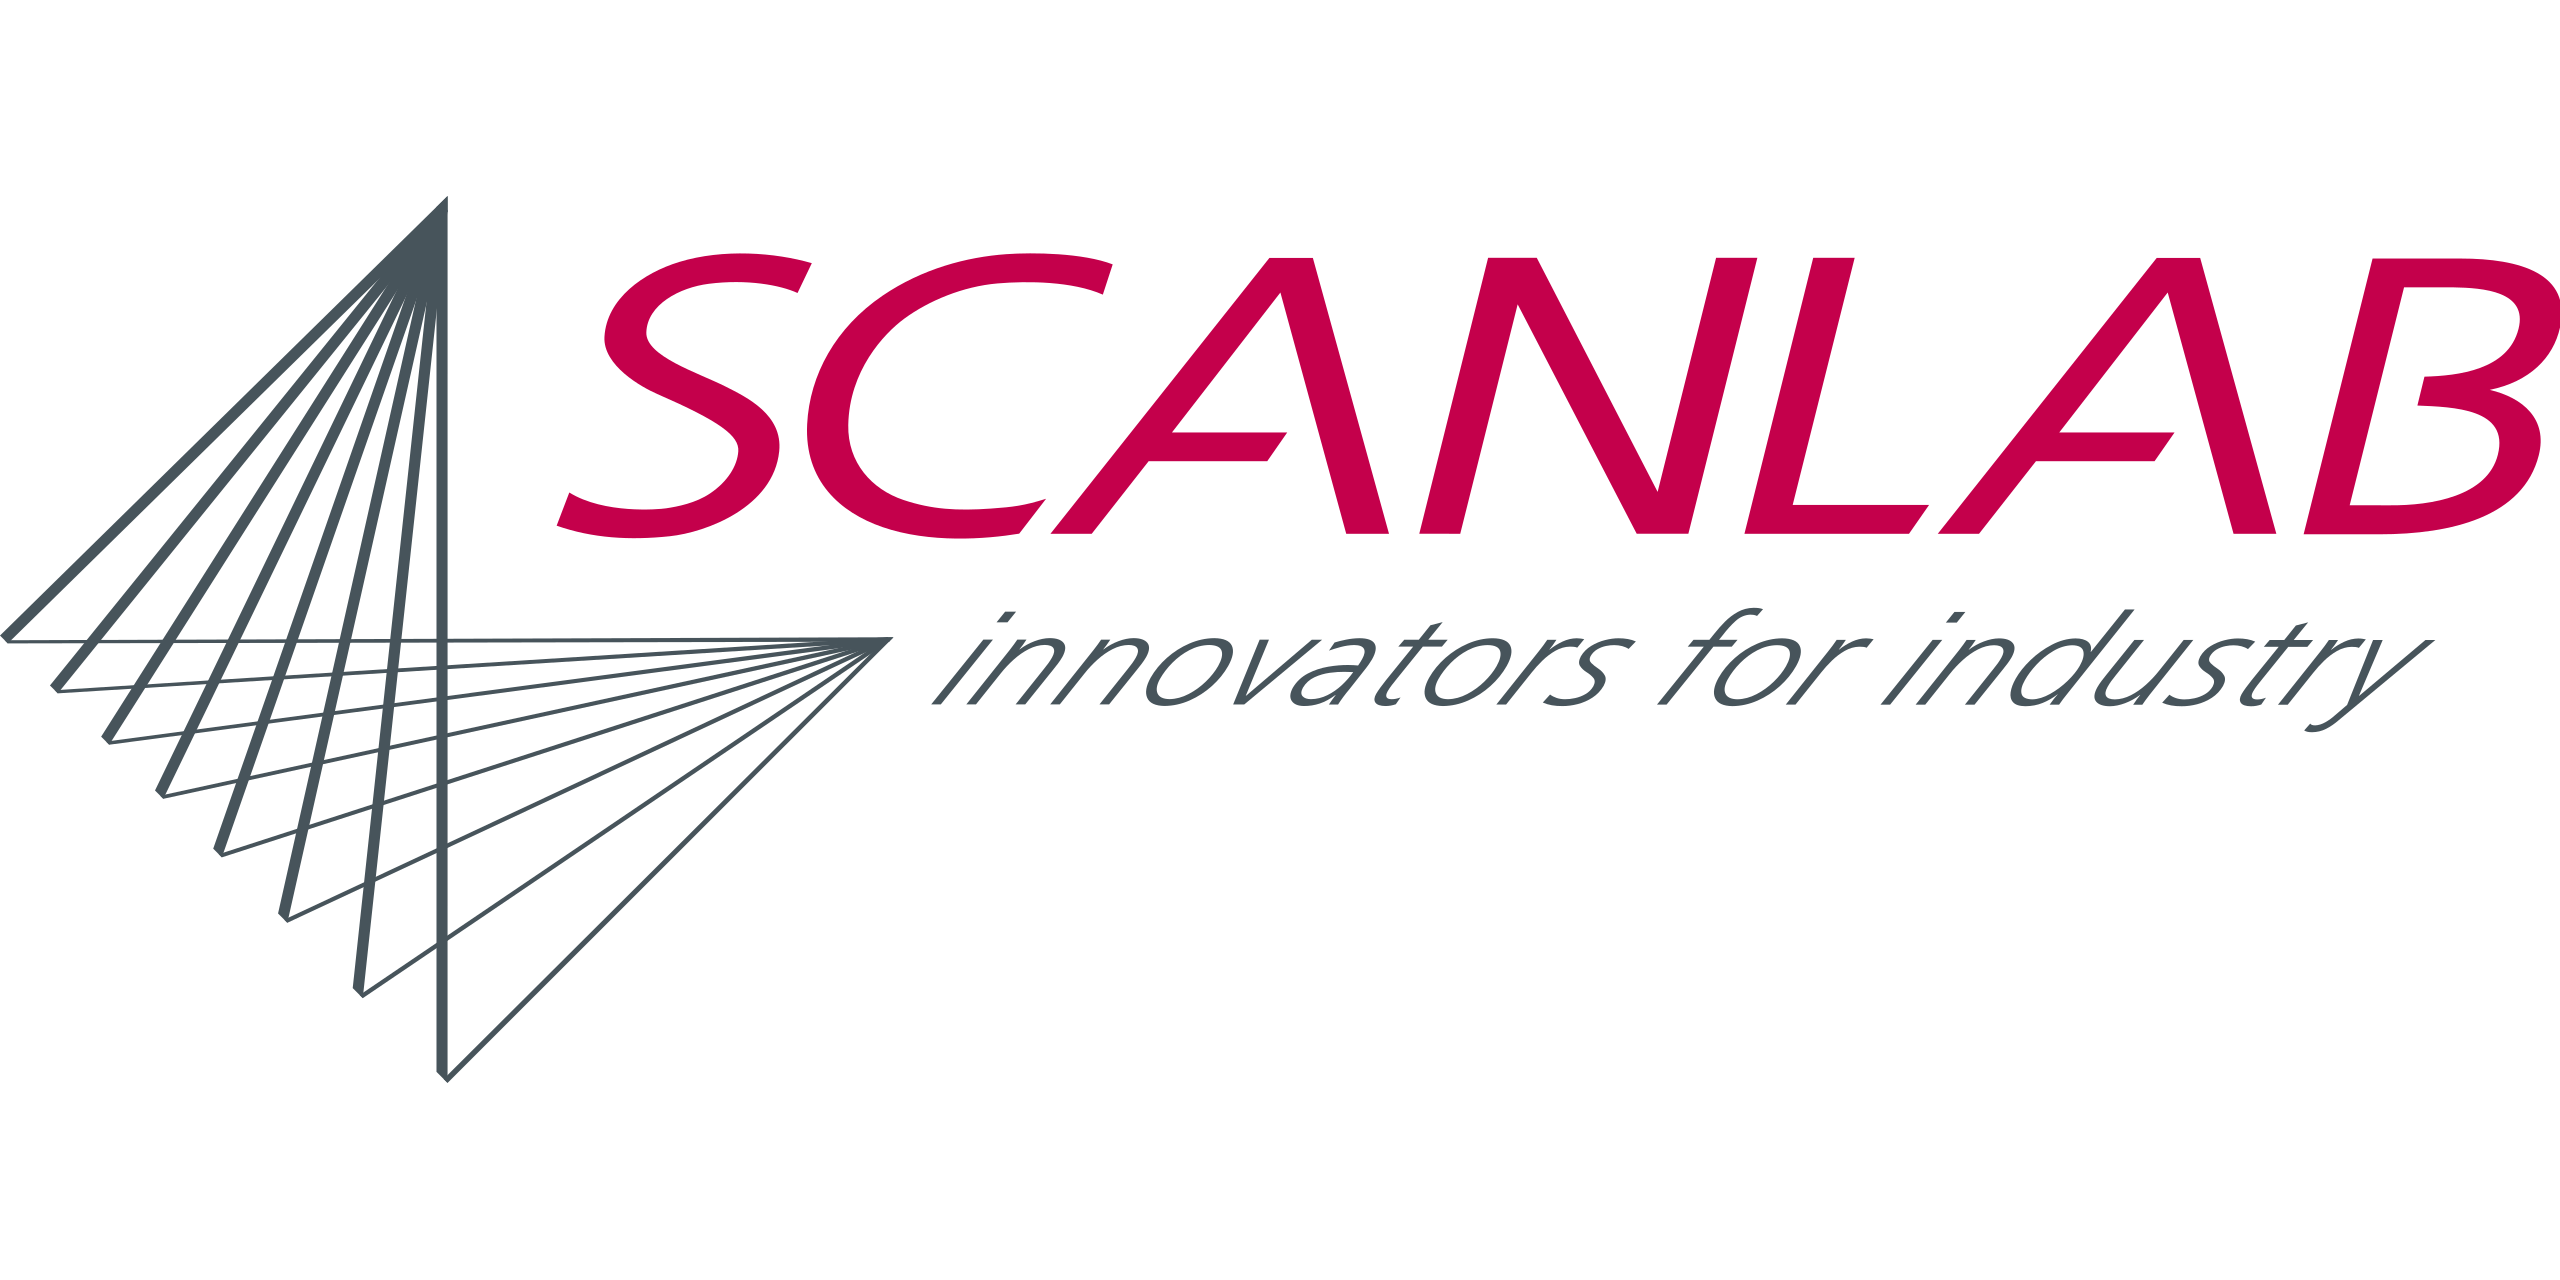 SCANLAB GmbH